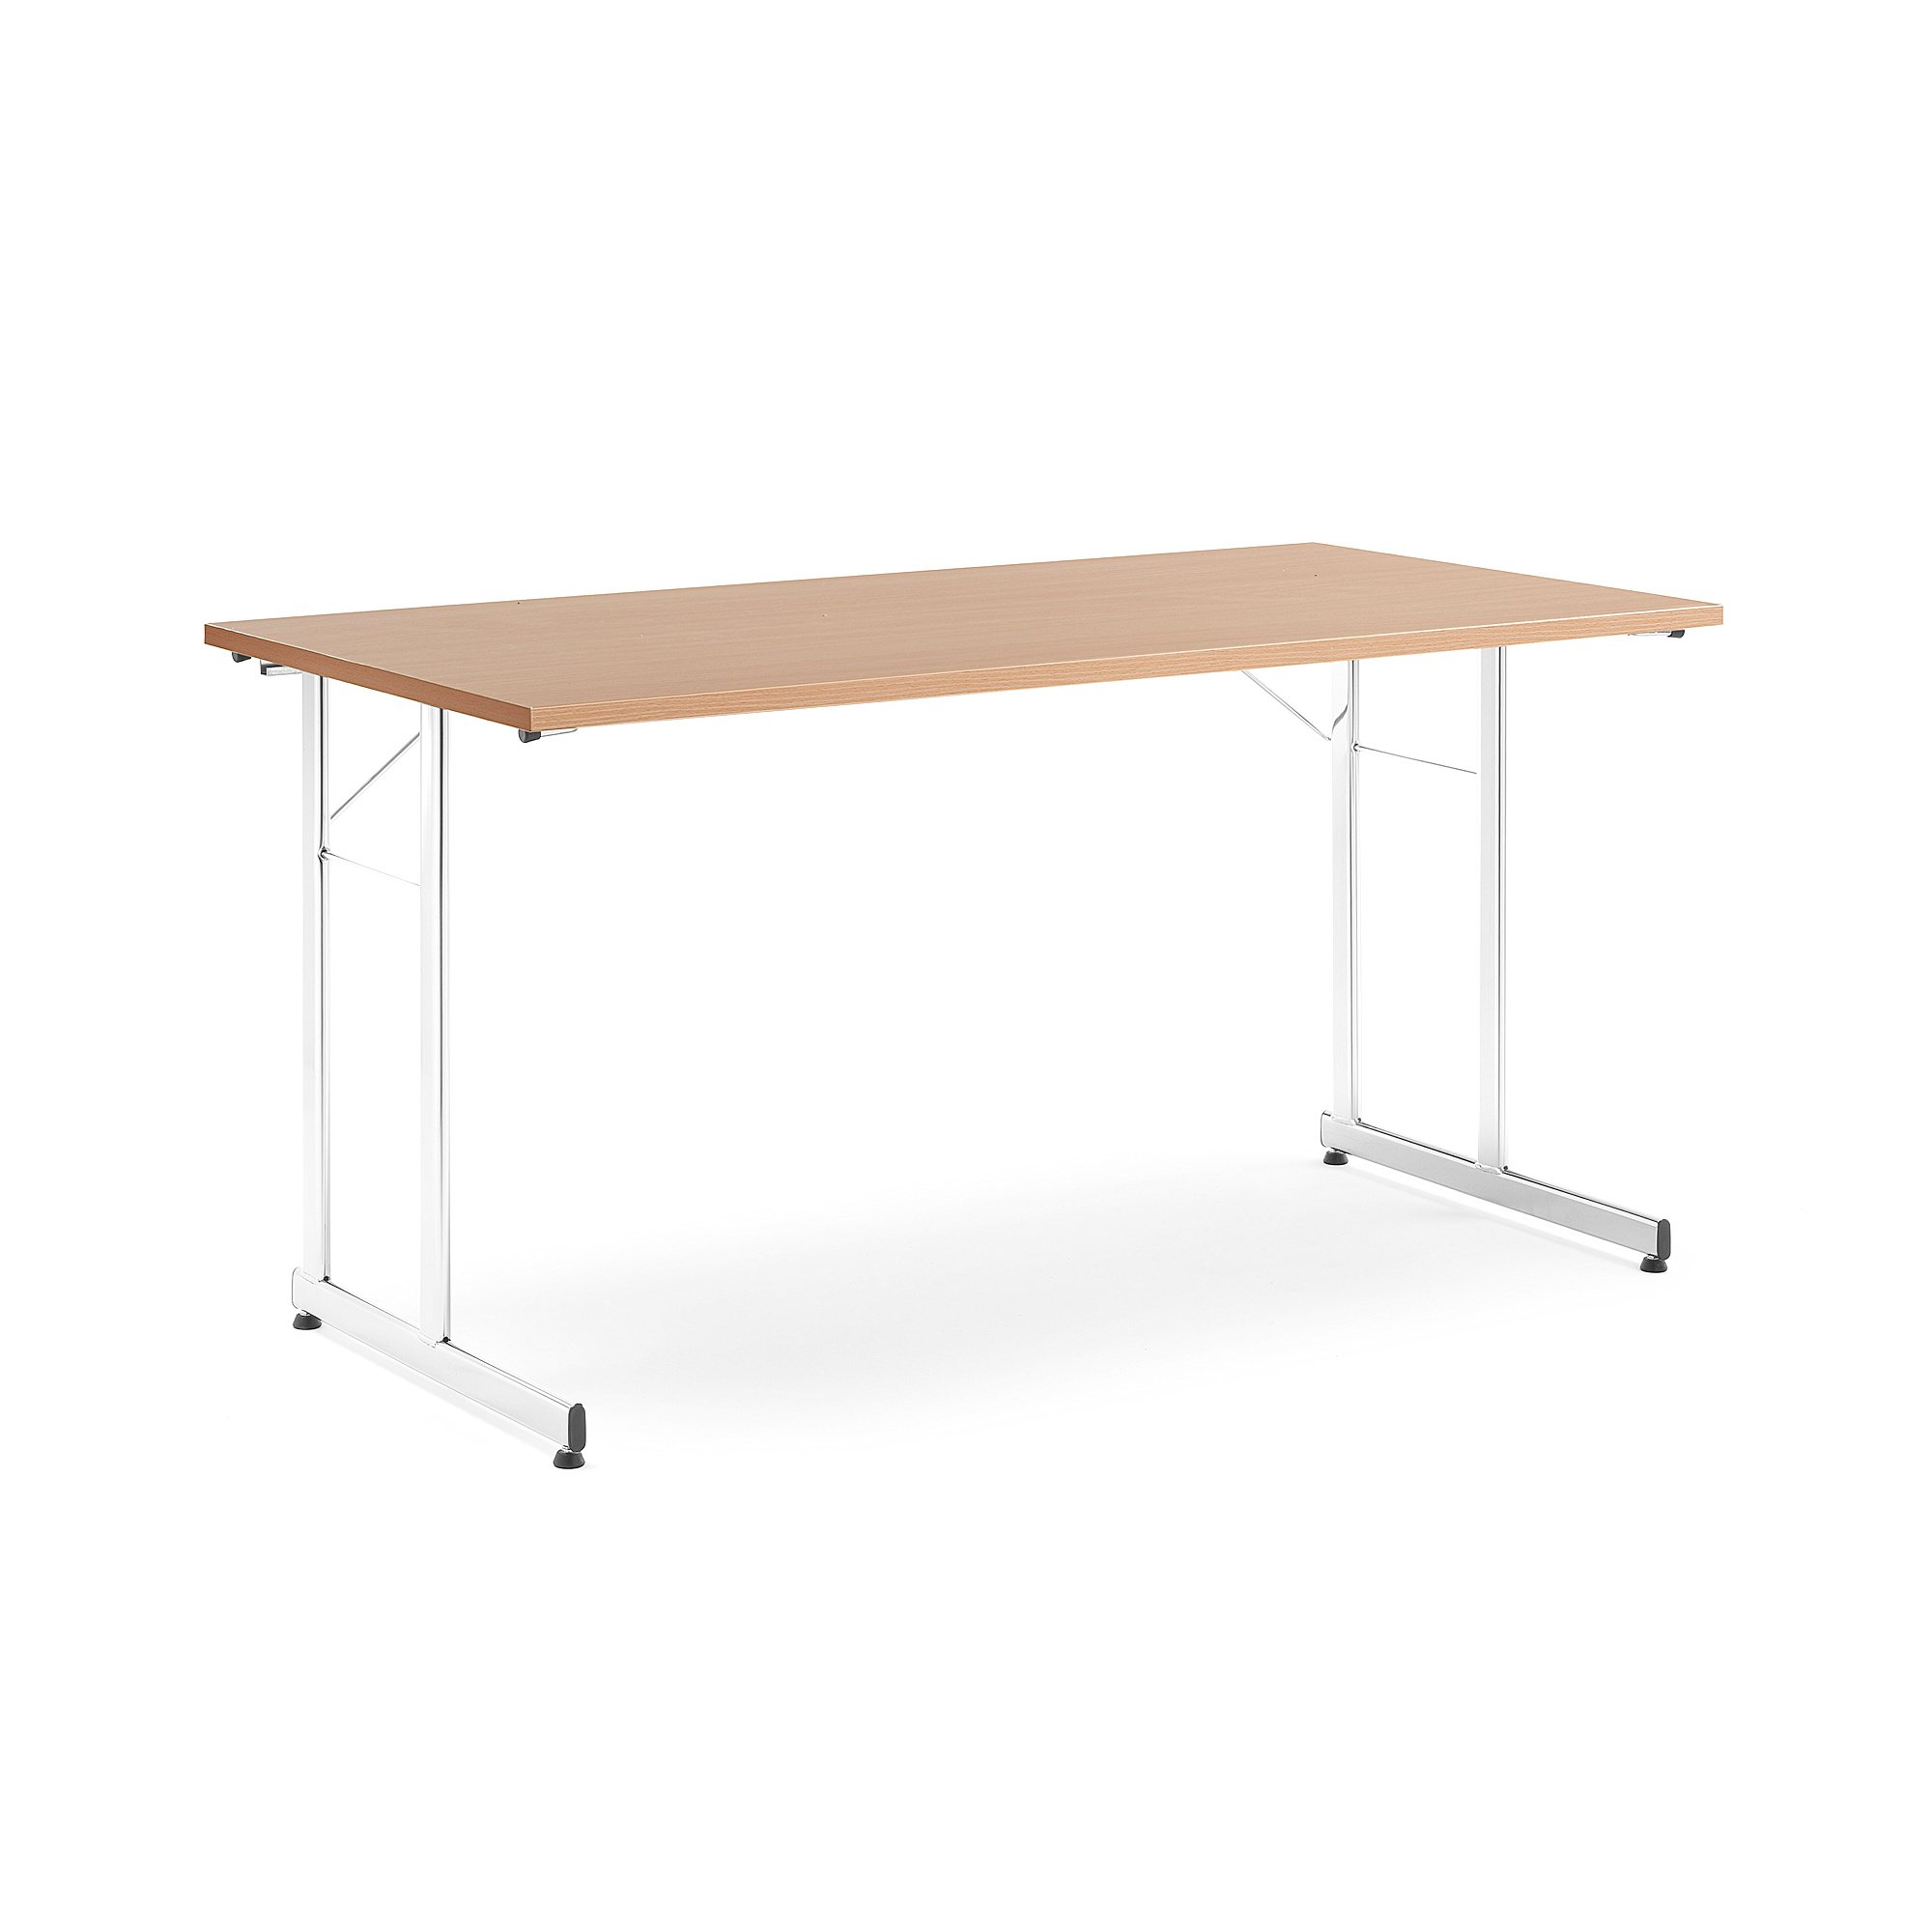 Skládací stůl CLAIRE, 1400x700 mm, buk, chrom